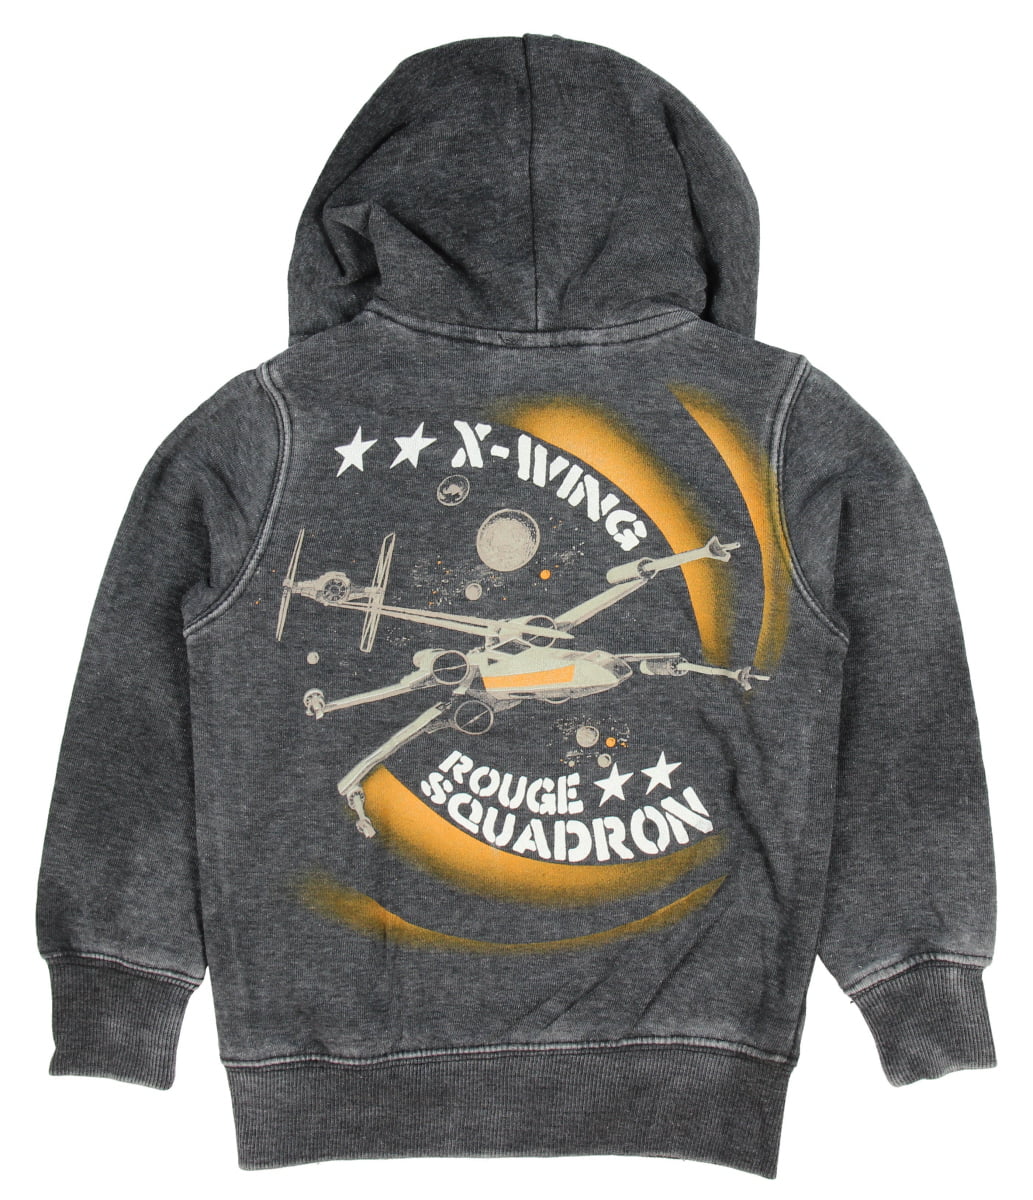 x wing pilot hoodie